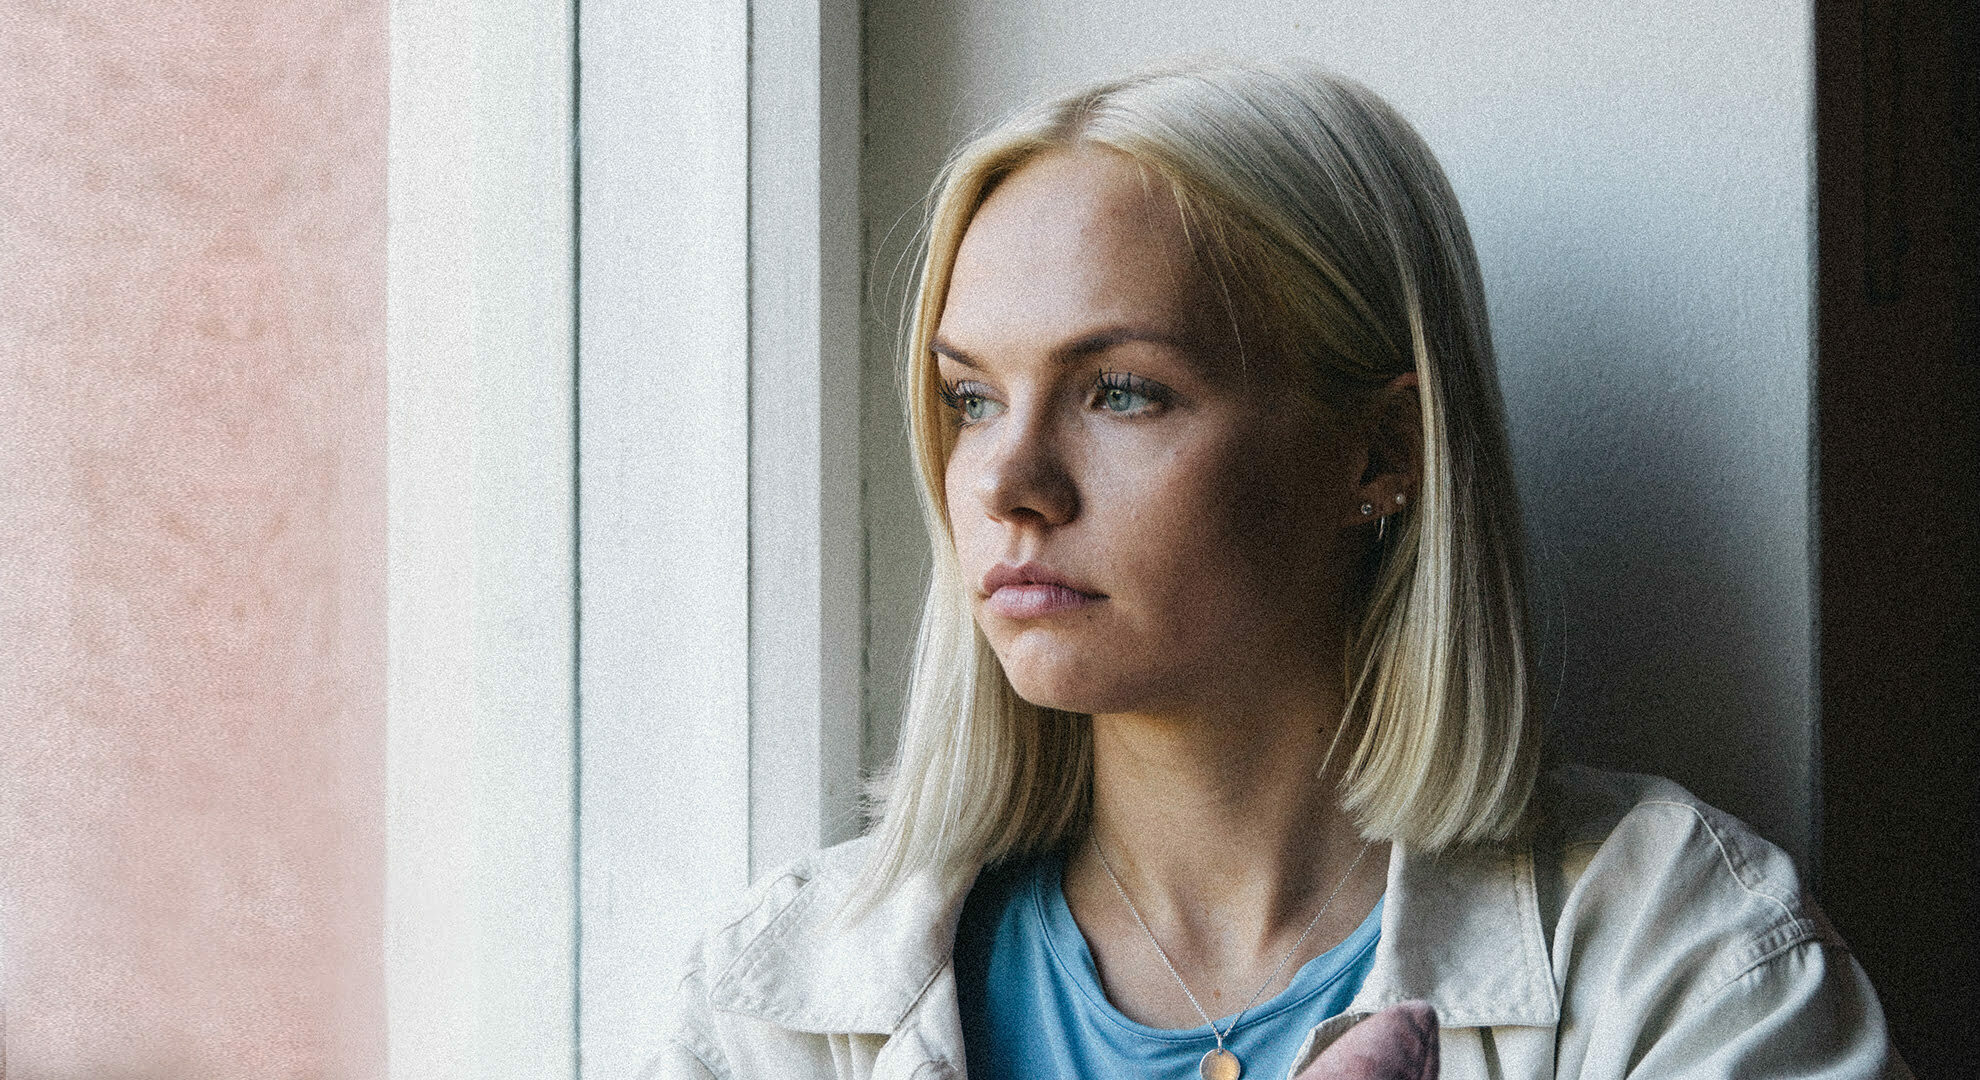 HelsinkiMission etusivun pääkuvassa nuori nainen katselee ikkunasta ulos.